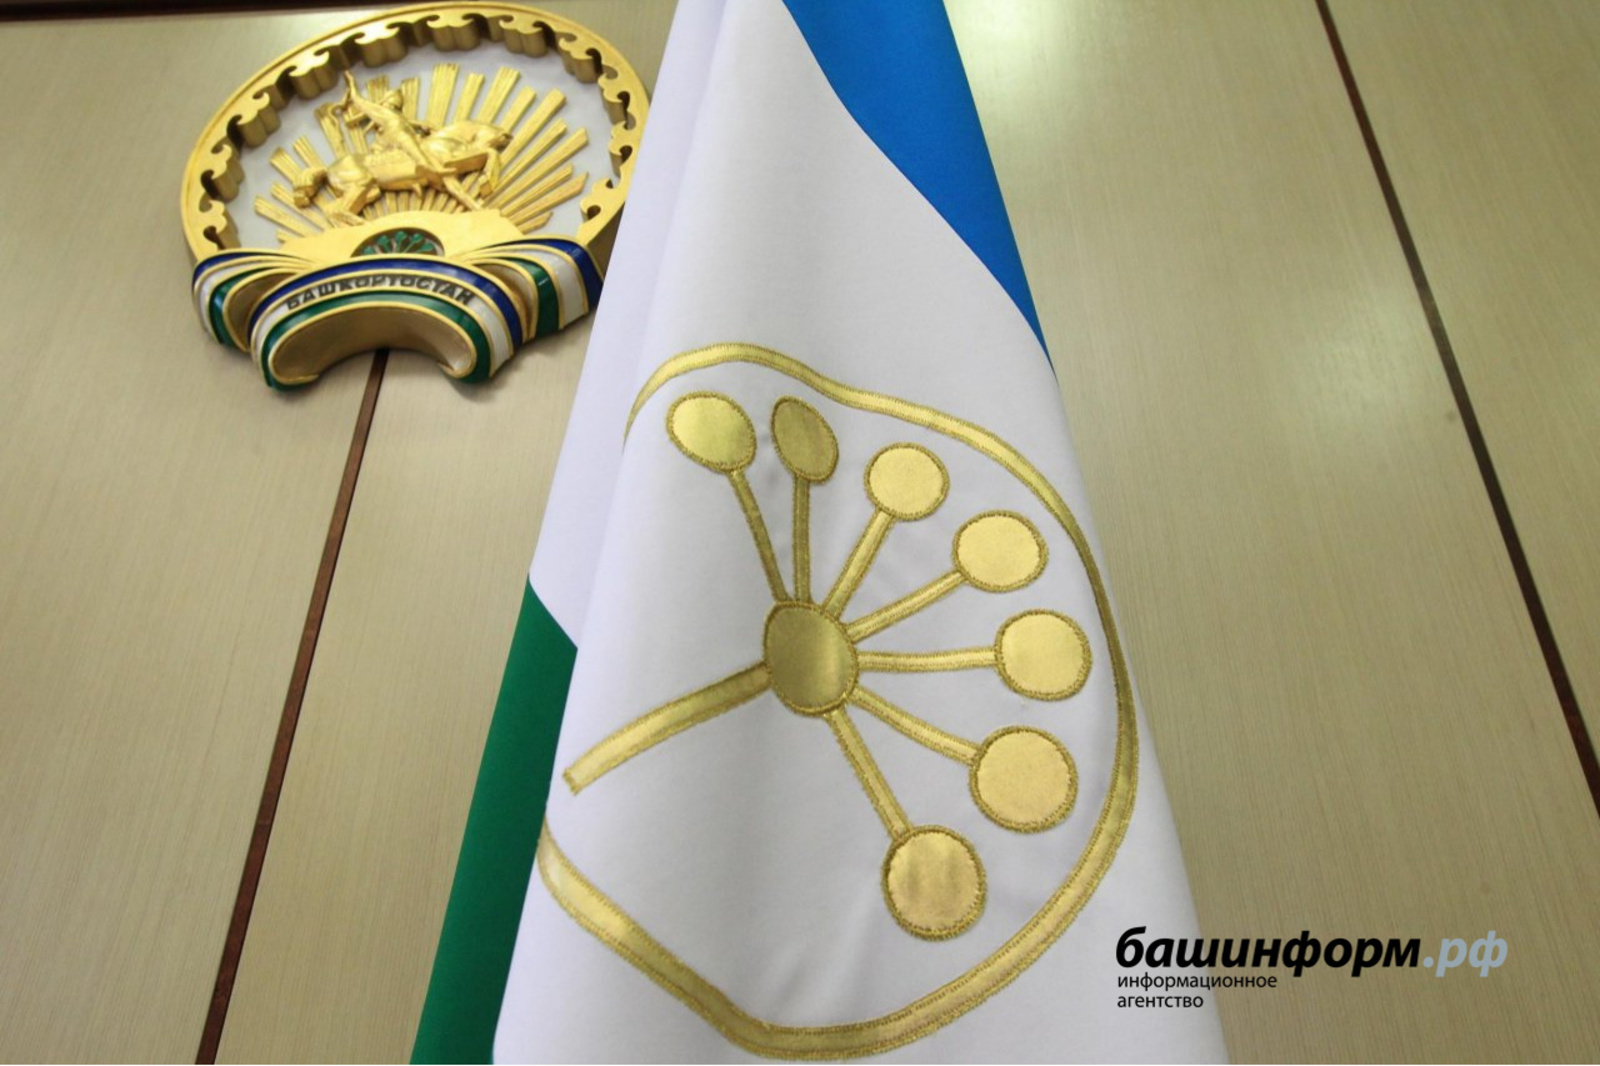 Глава Башкортостана Хабиров Радий Фаритович подписал указ о подготовке и проведении Дня Республики в 2021 году